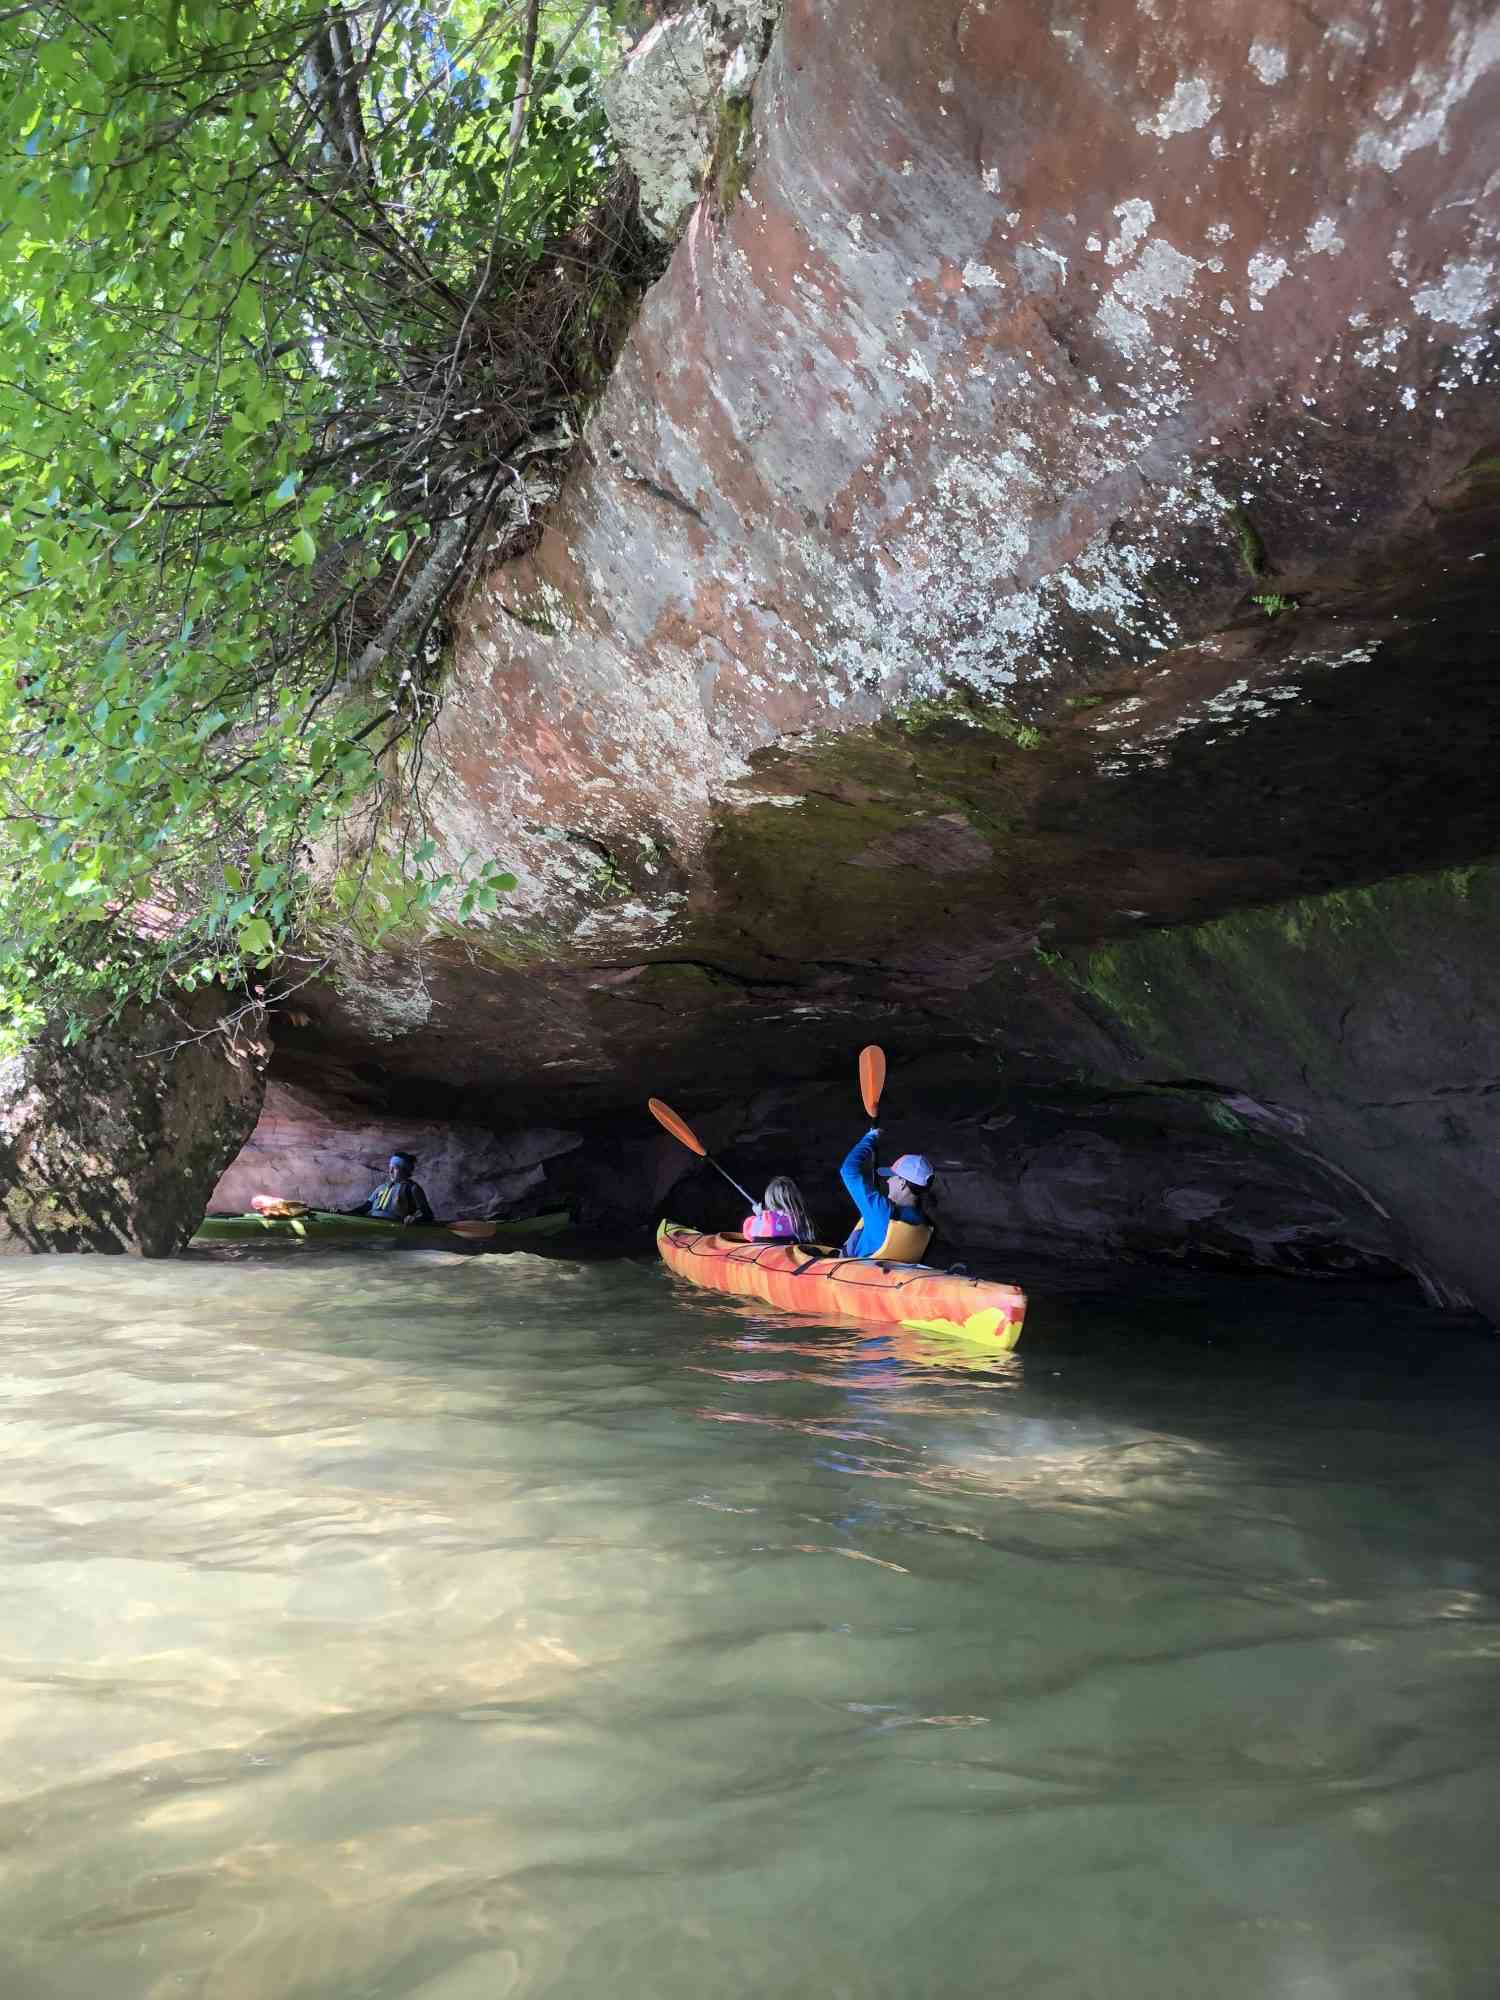 Family-friendly kayaking excursion Apostle Islands